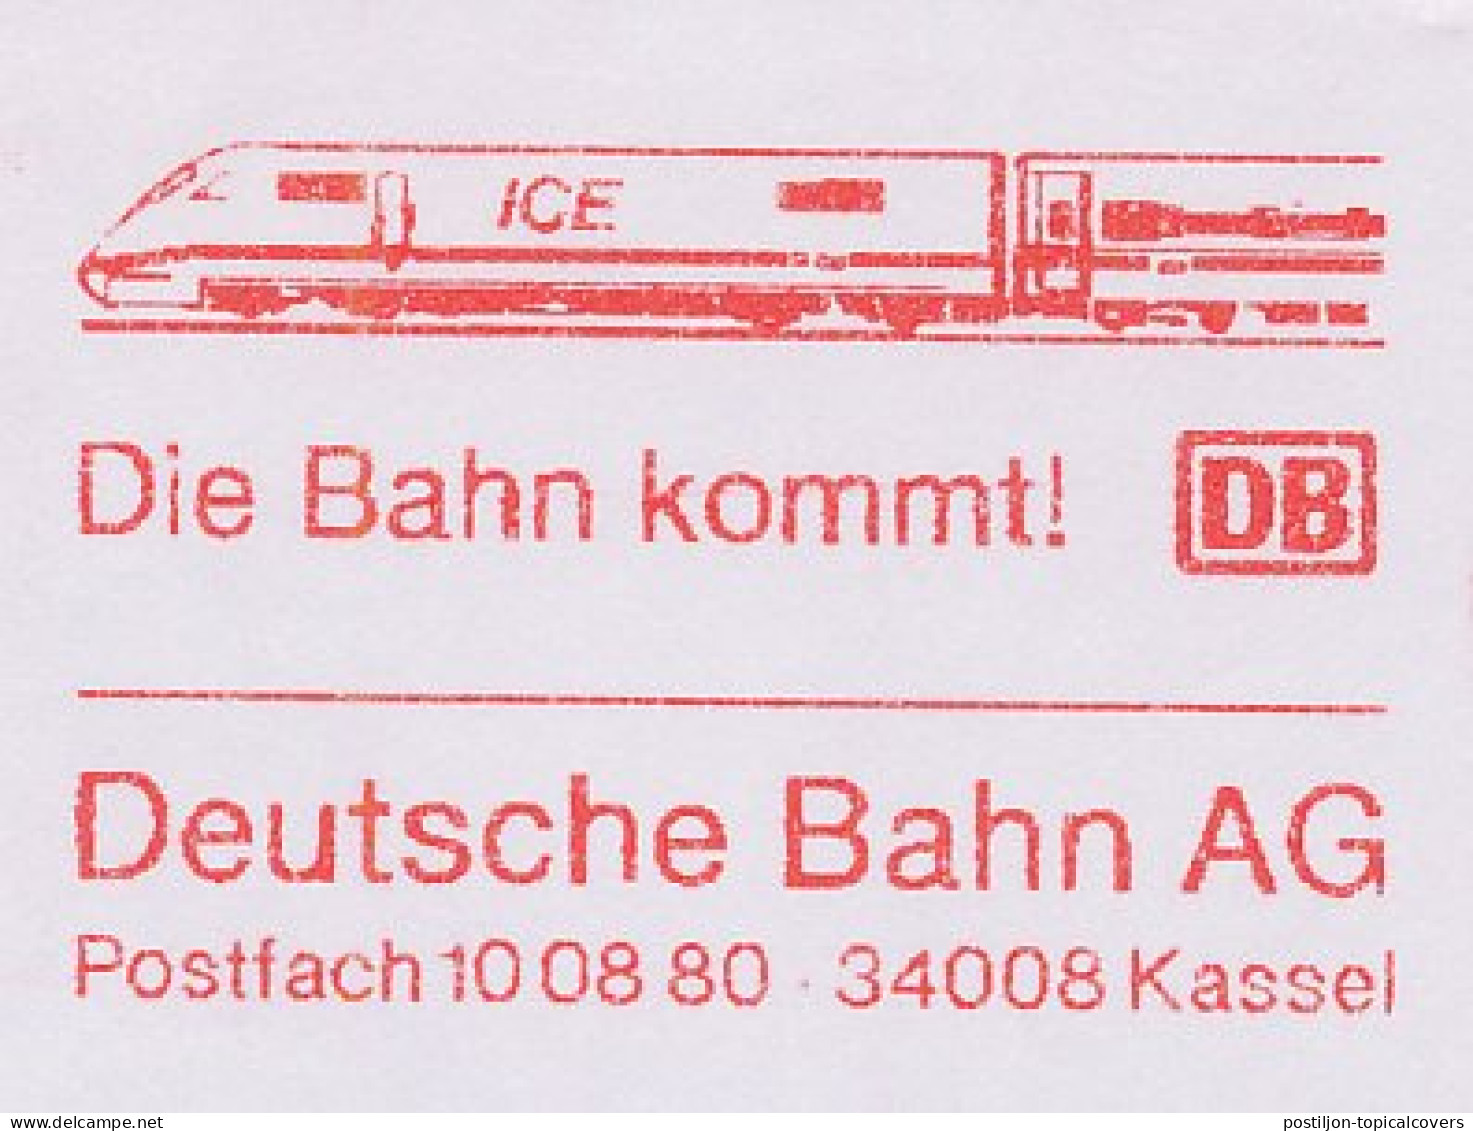 Meter Cut Germany 1999 Deutsche Bahn - ICE - Treni